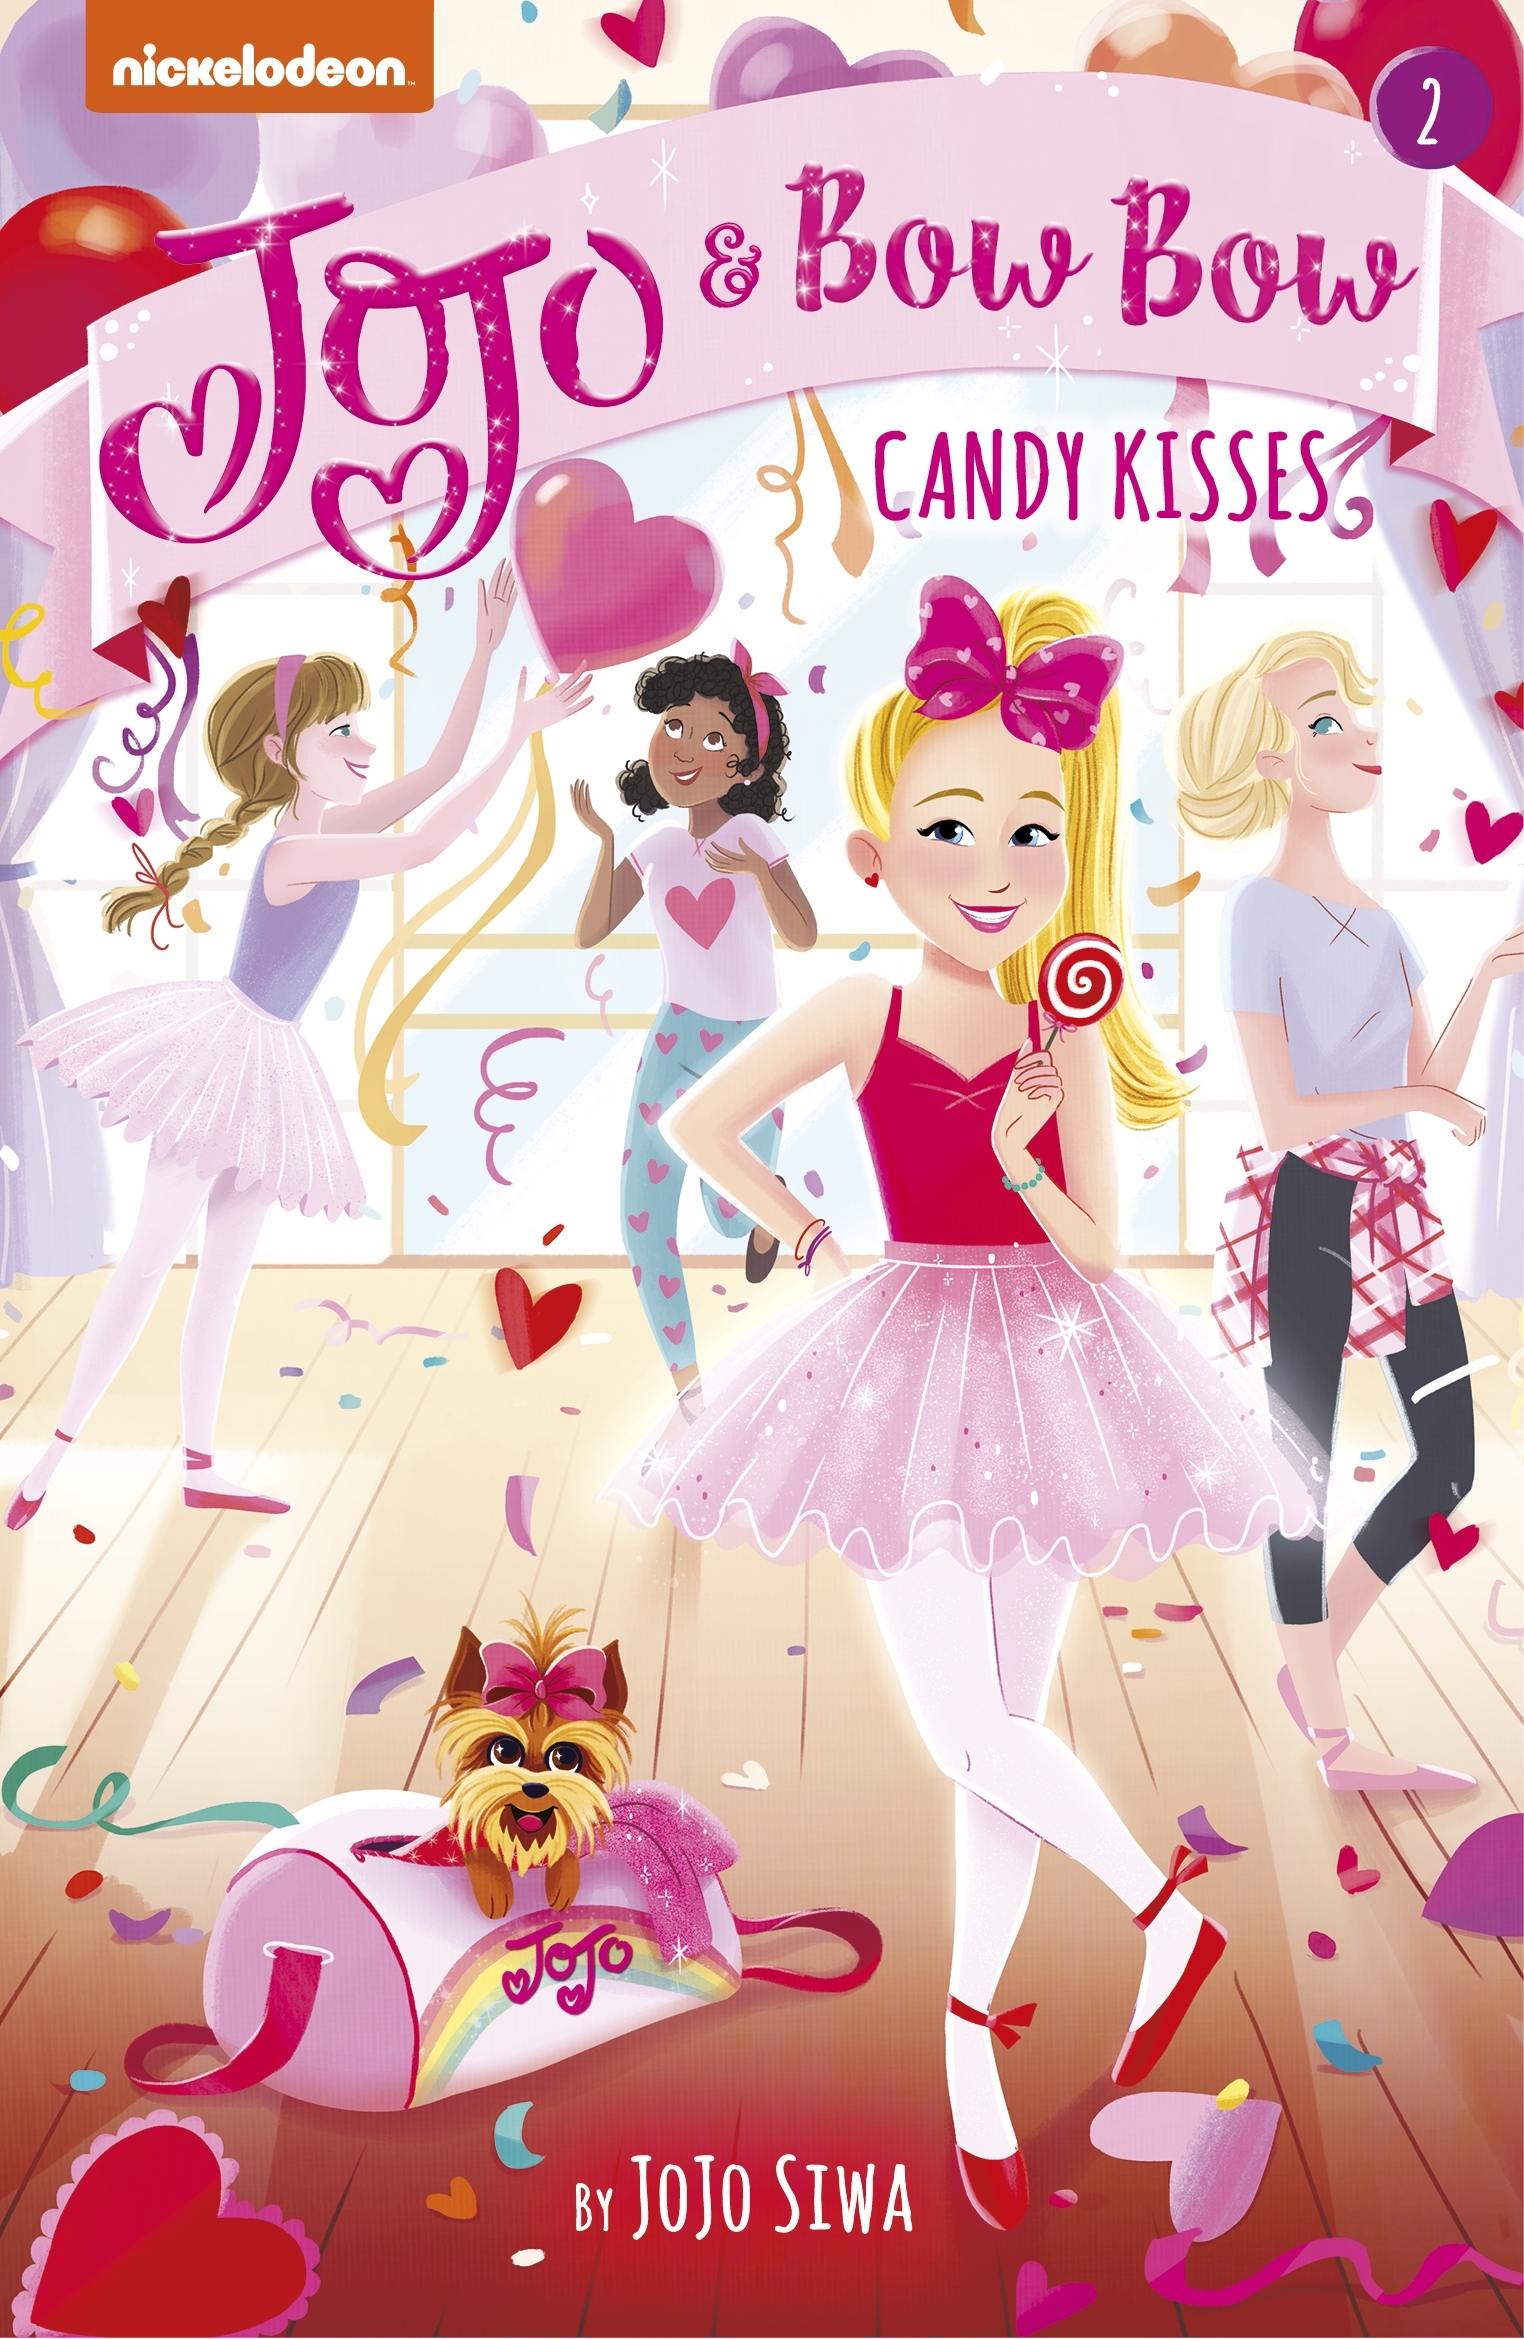 Jojo & bow bow :  candy kisses